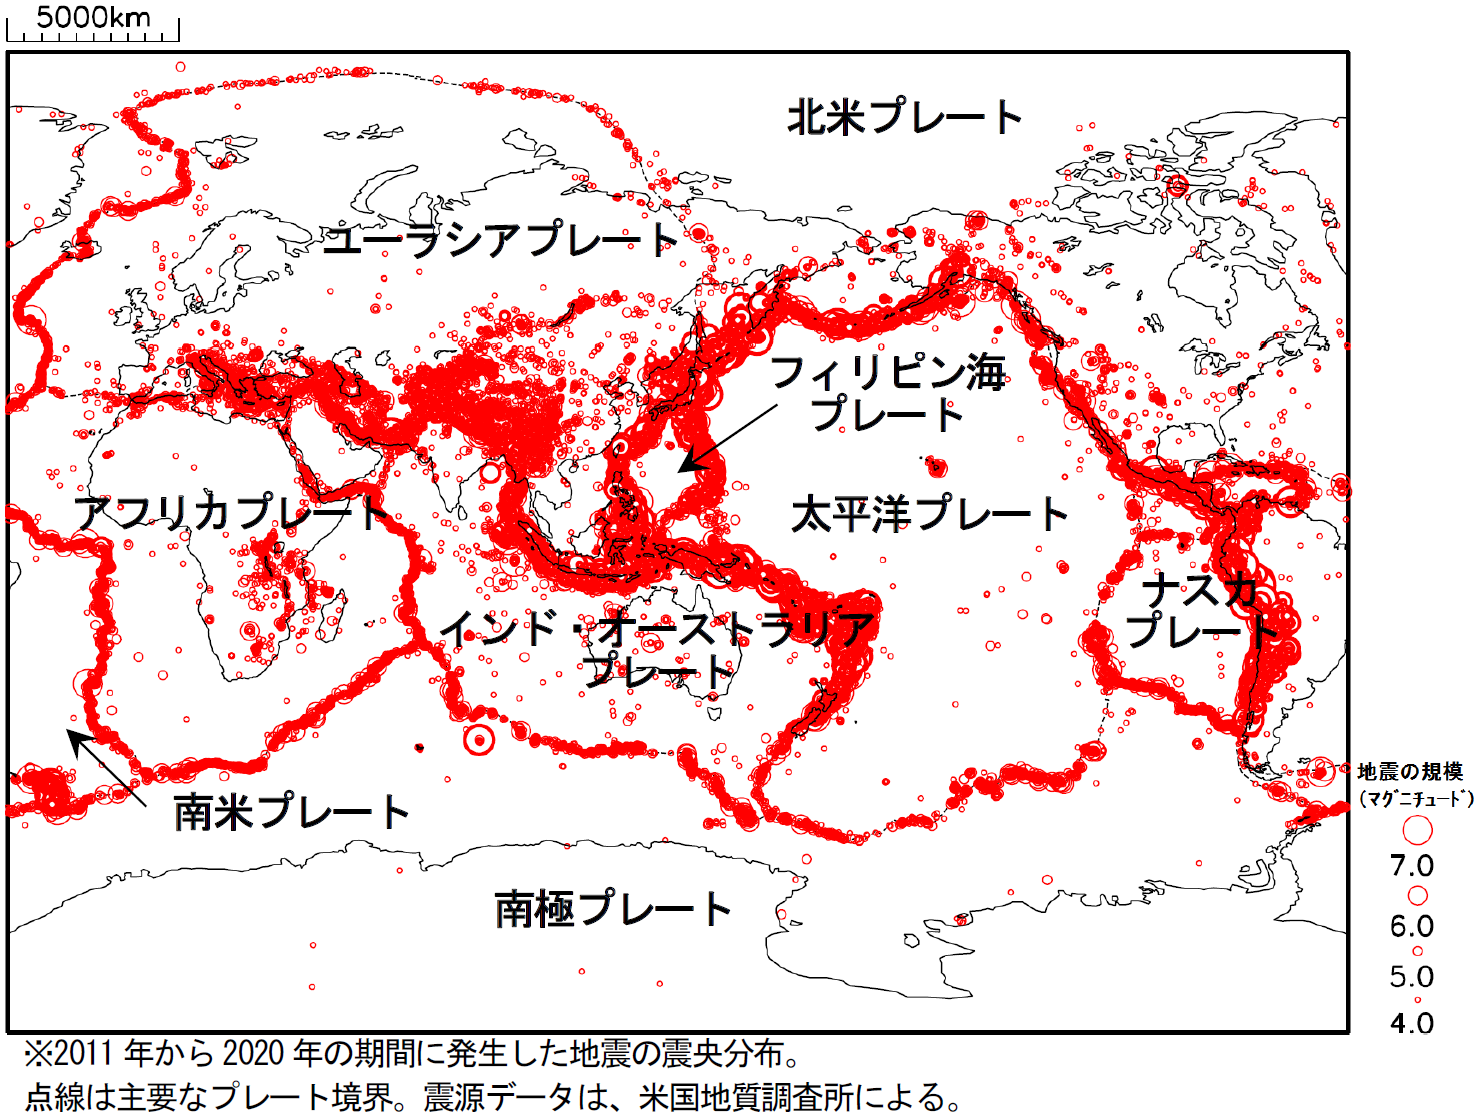 日本 で 地震 が 多い 理由